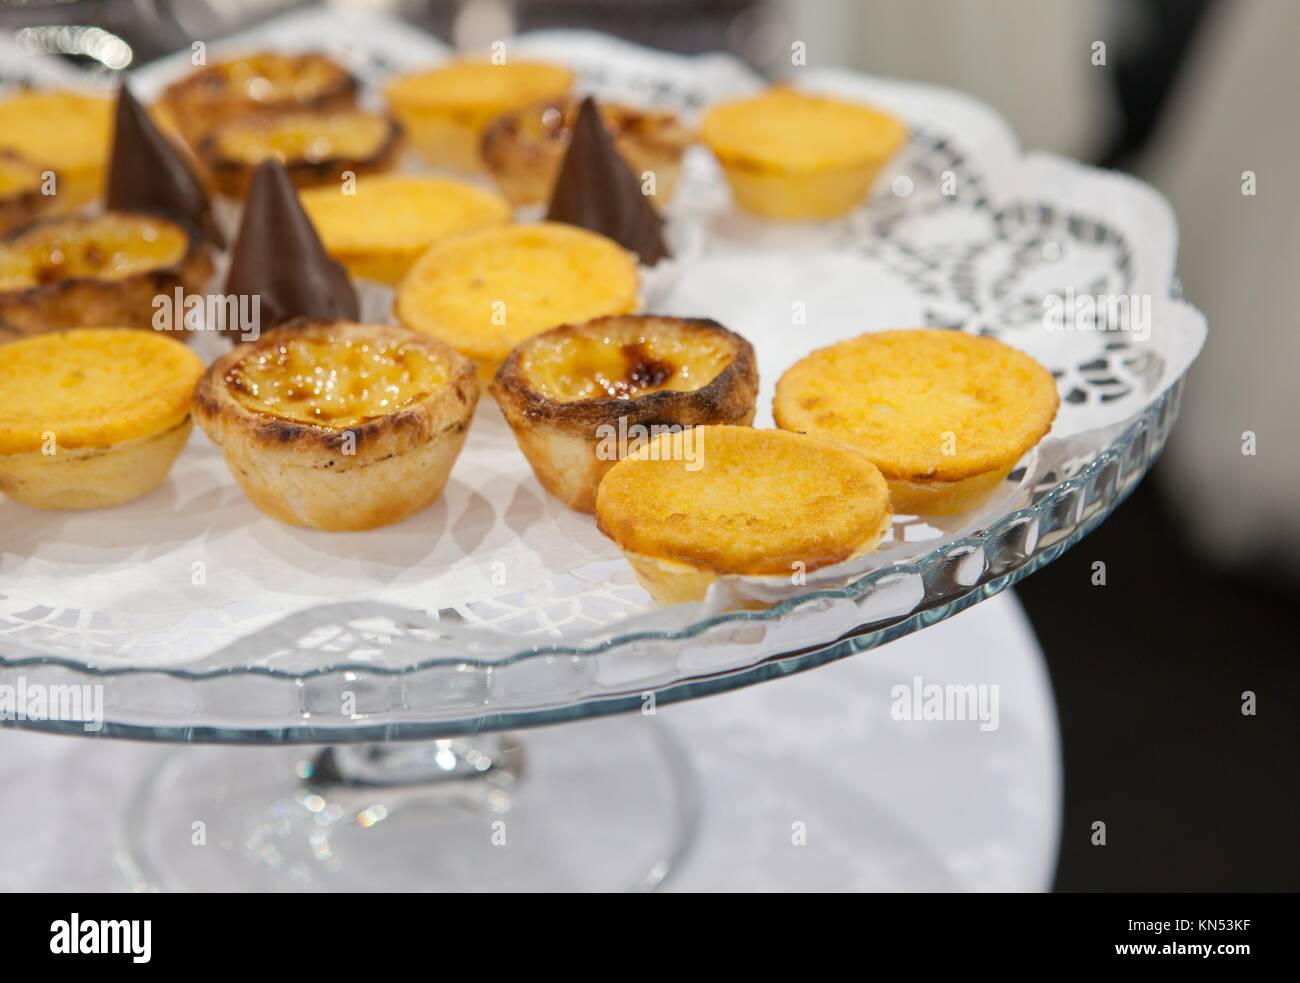 Crème anglaise oeuf portugais nommé aussi pâtisserie Pasteis de nata sur son socle en verre. Banque D'Images